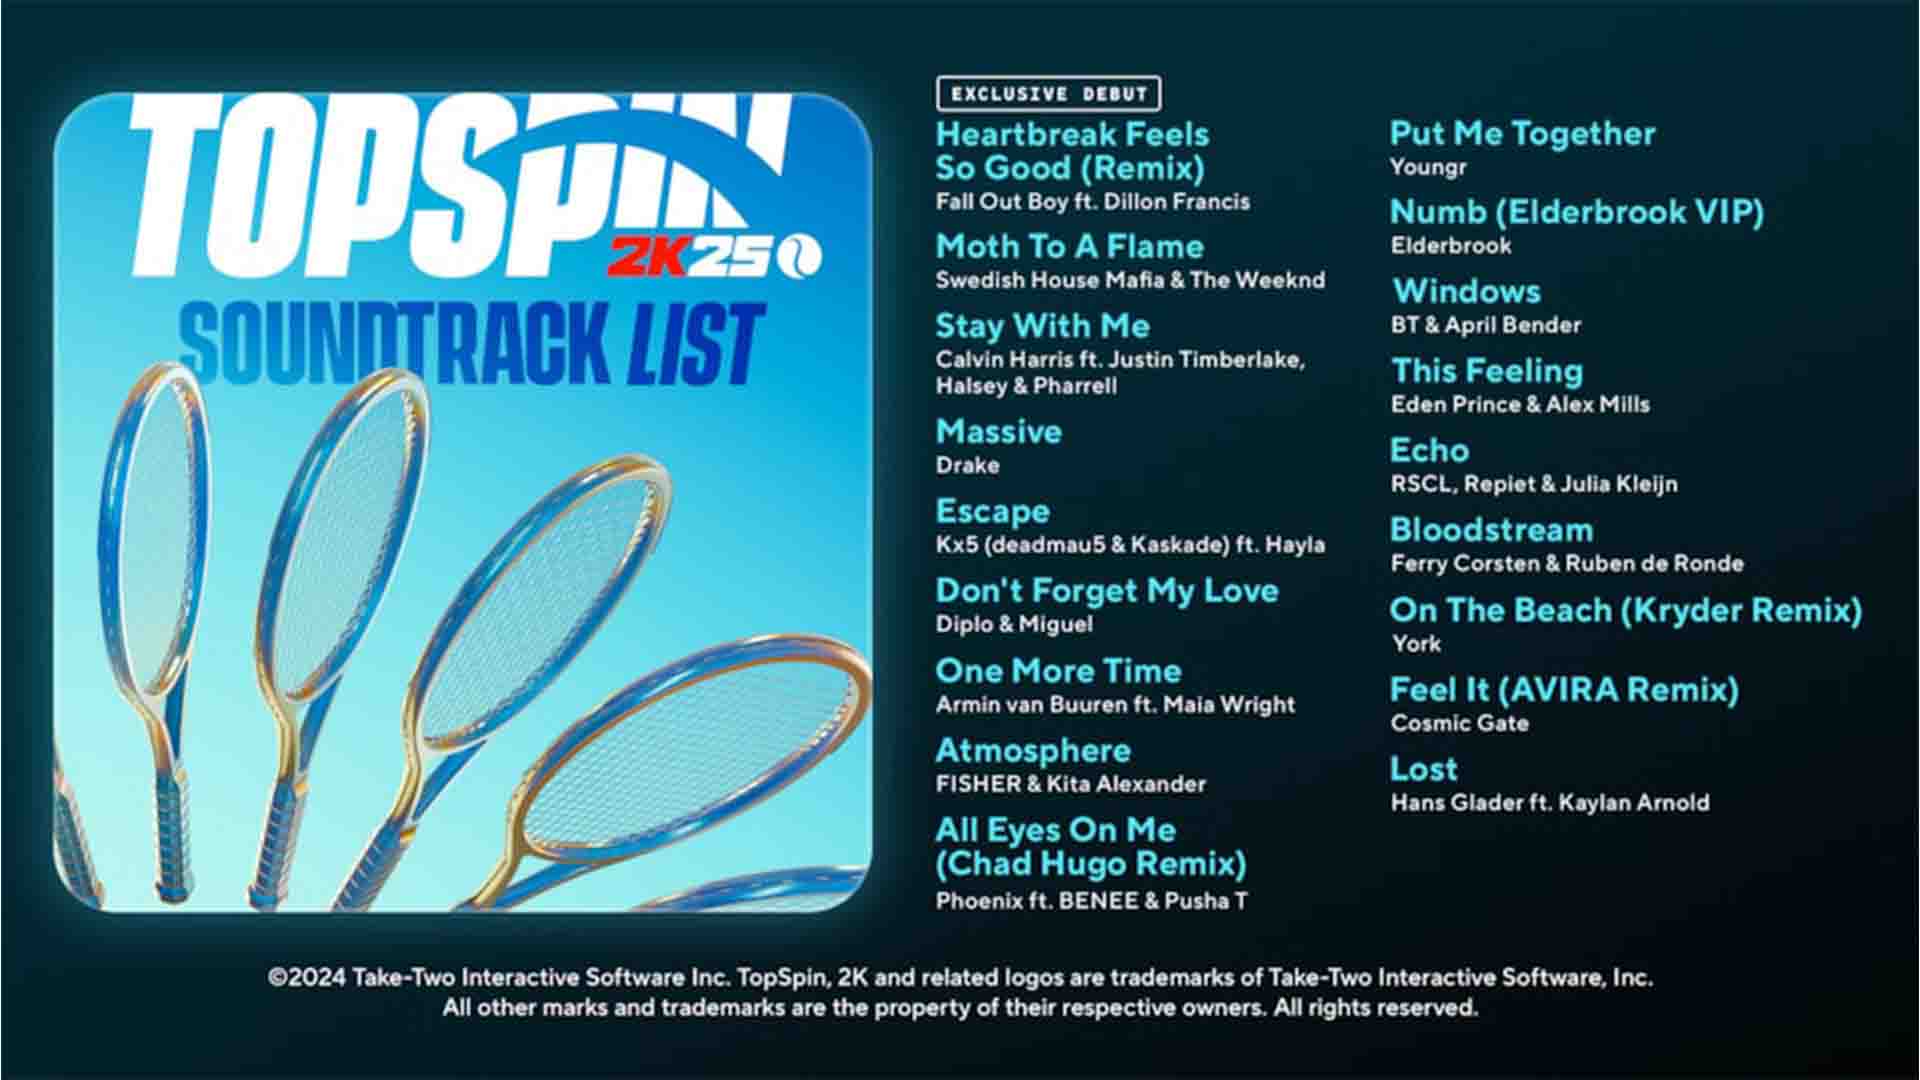 TopSpin 2K25 soundtrack